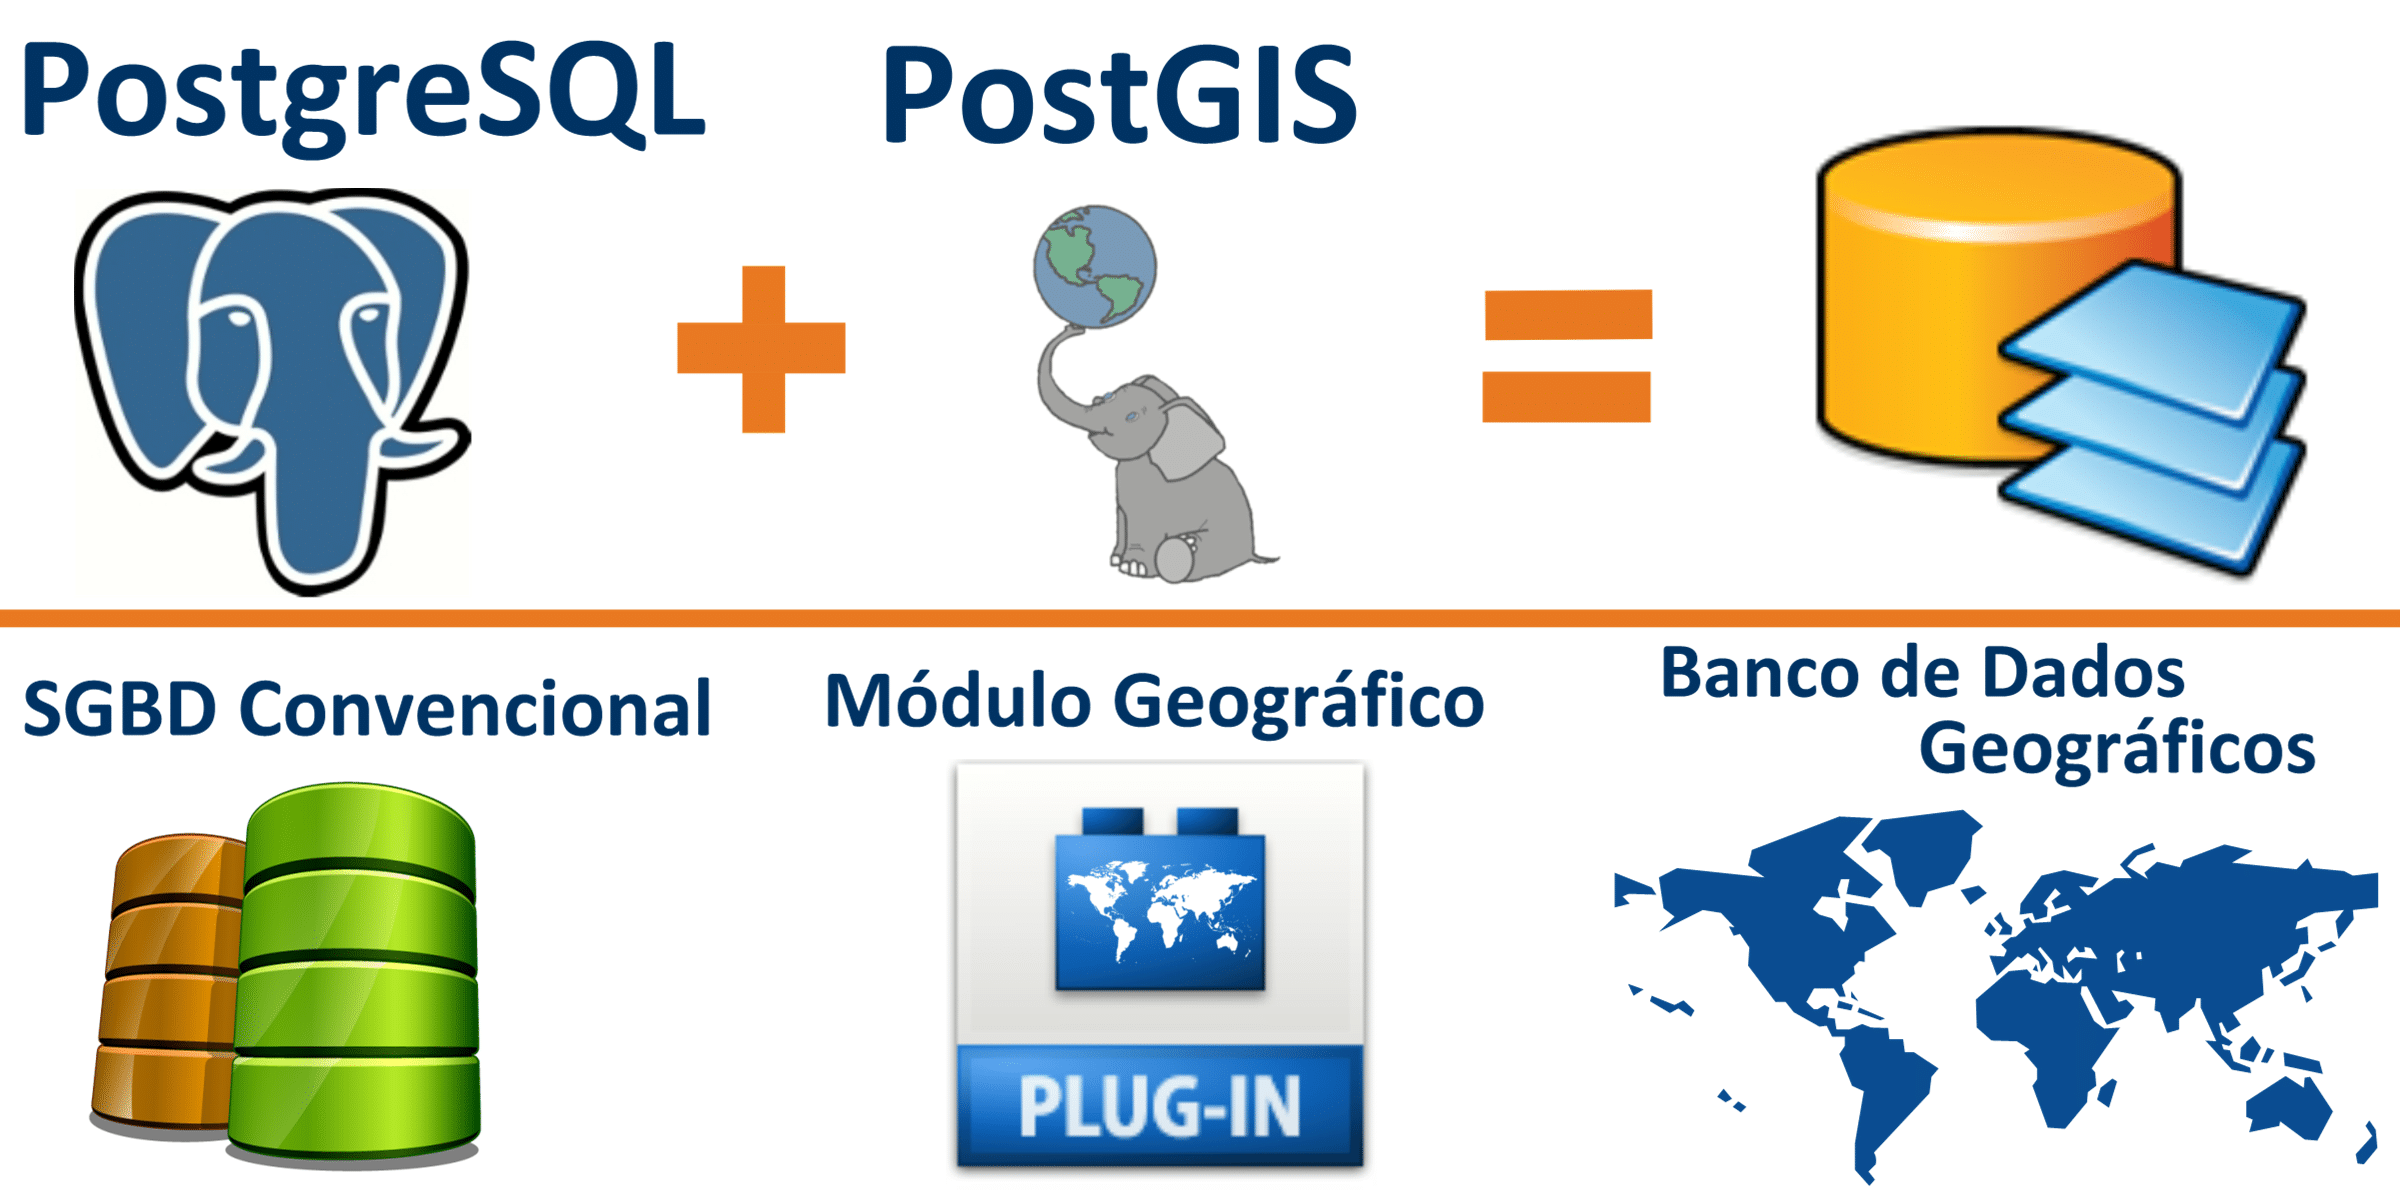 Relação entre PostgreSQL e PostGIS